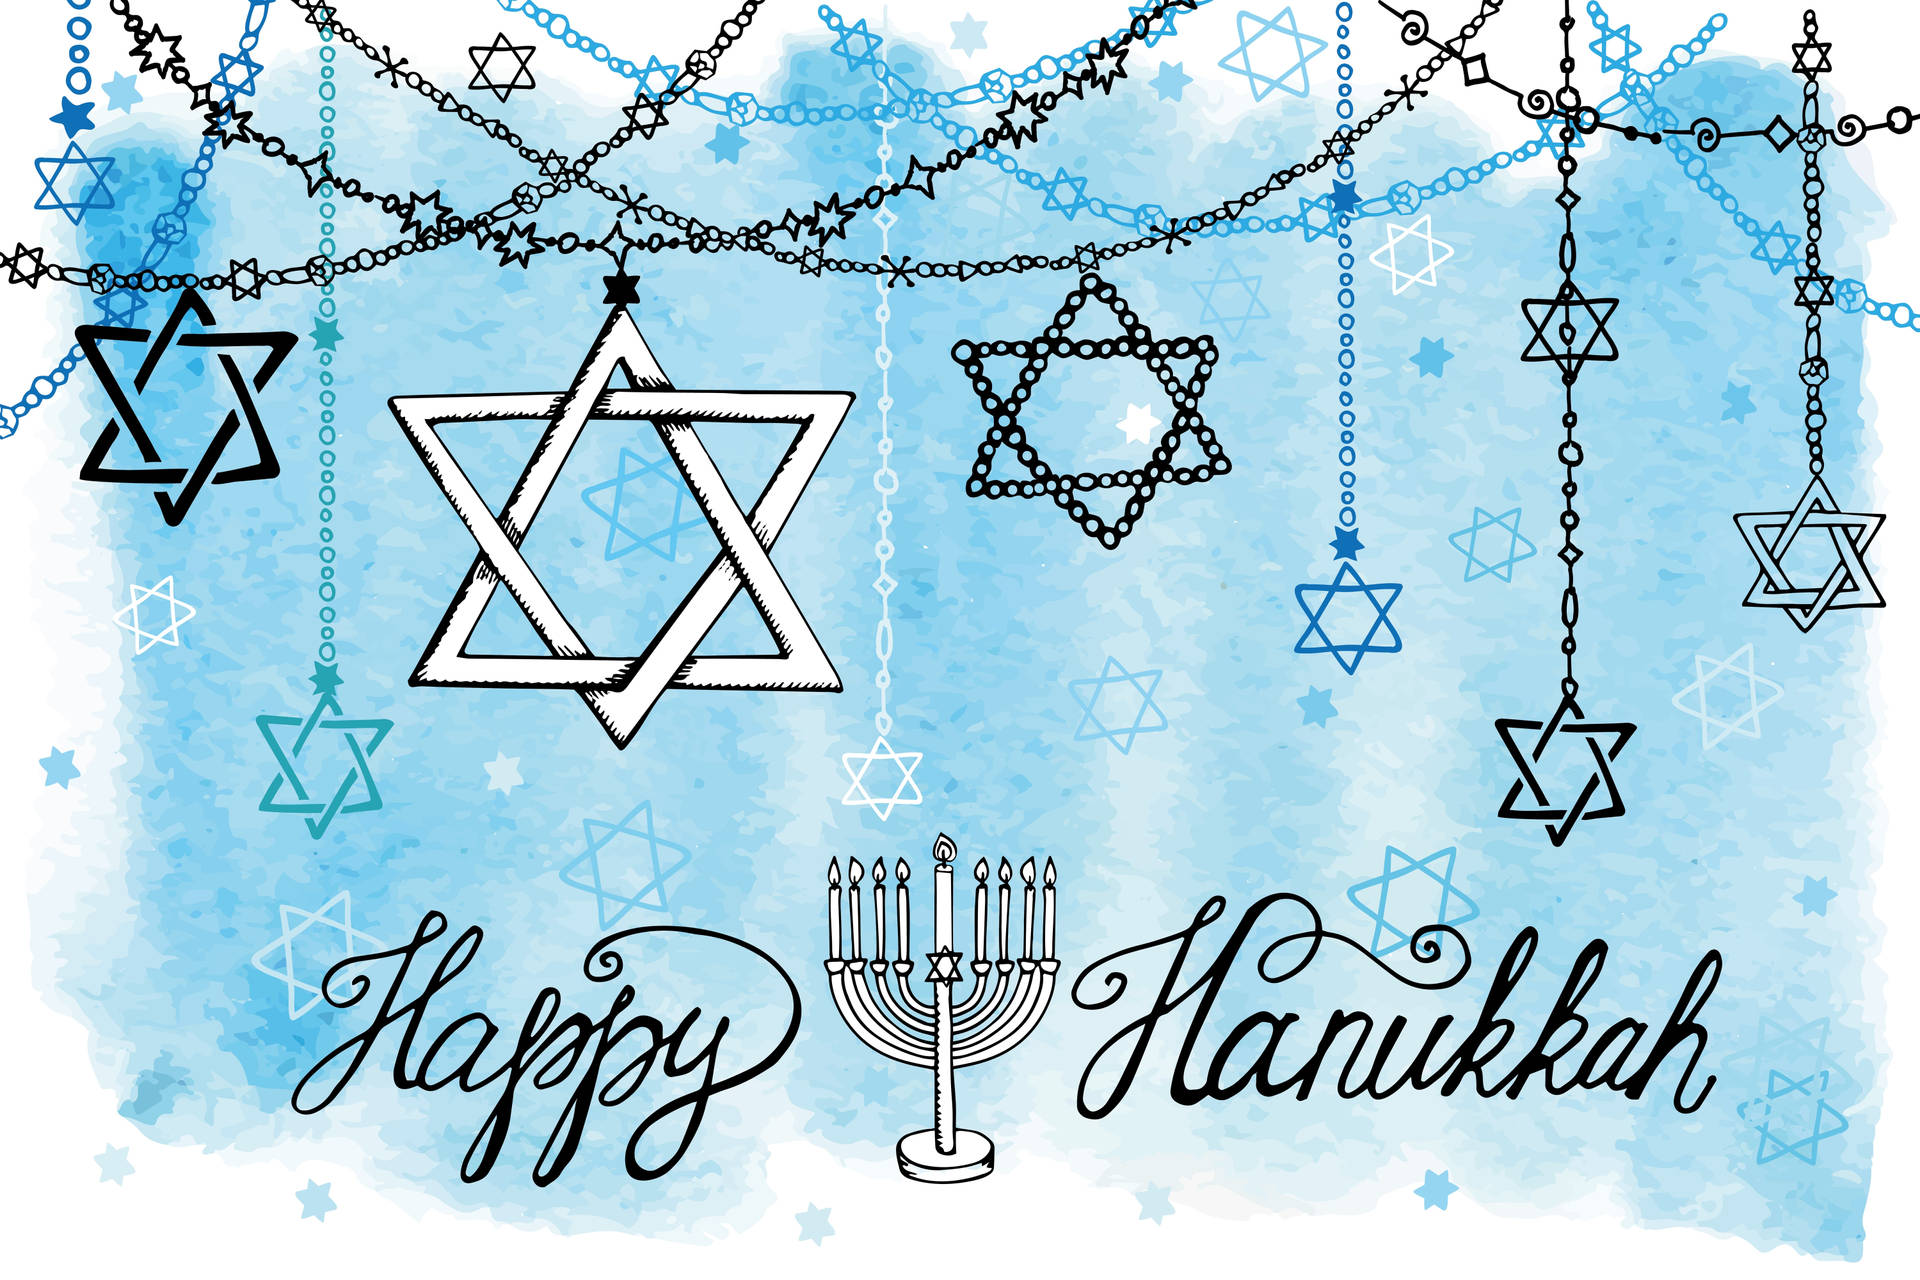 Illuminating Star of David - Hanukkah Celebration Wallpaper